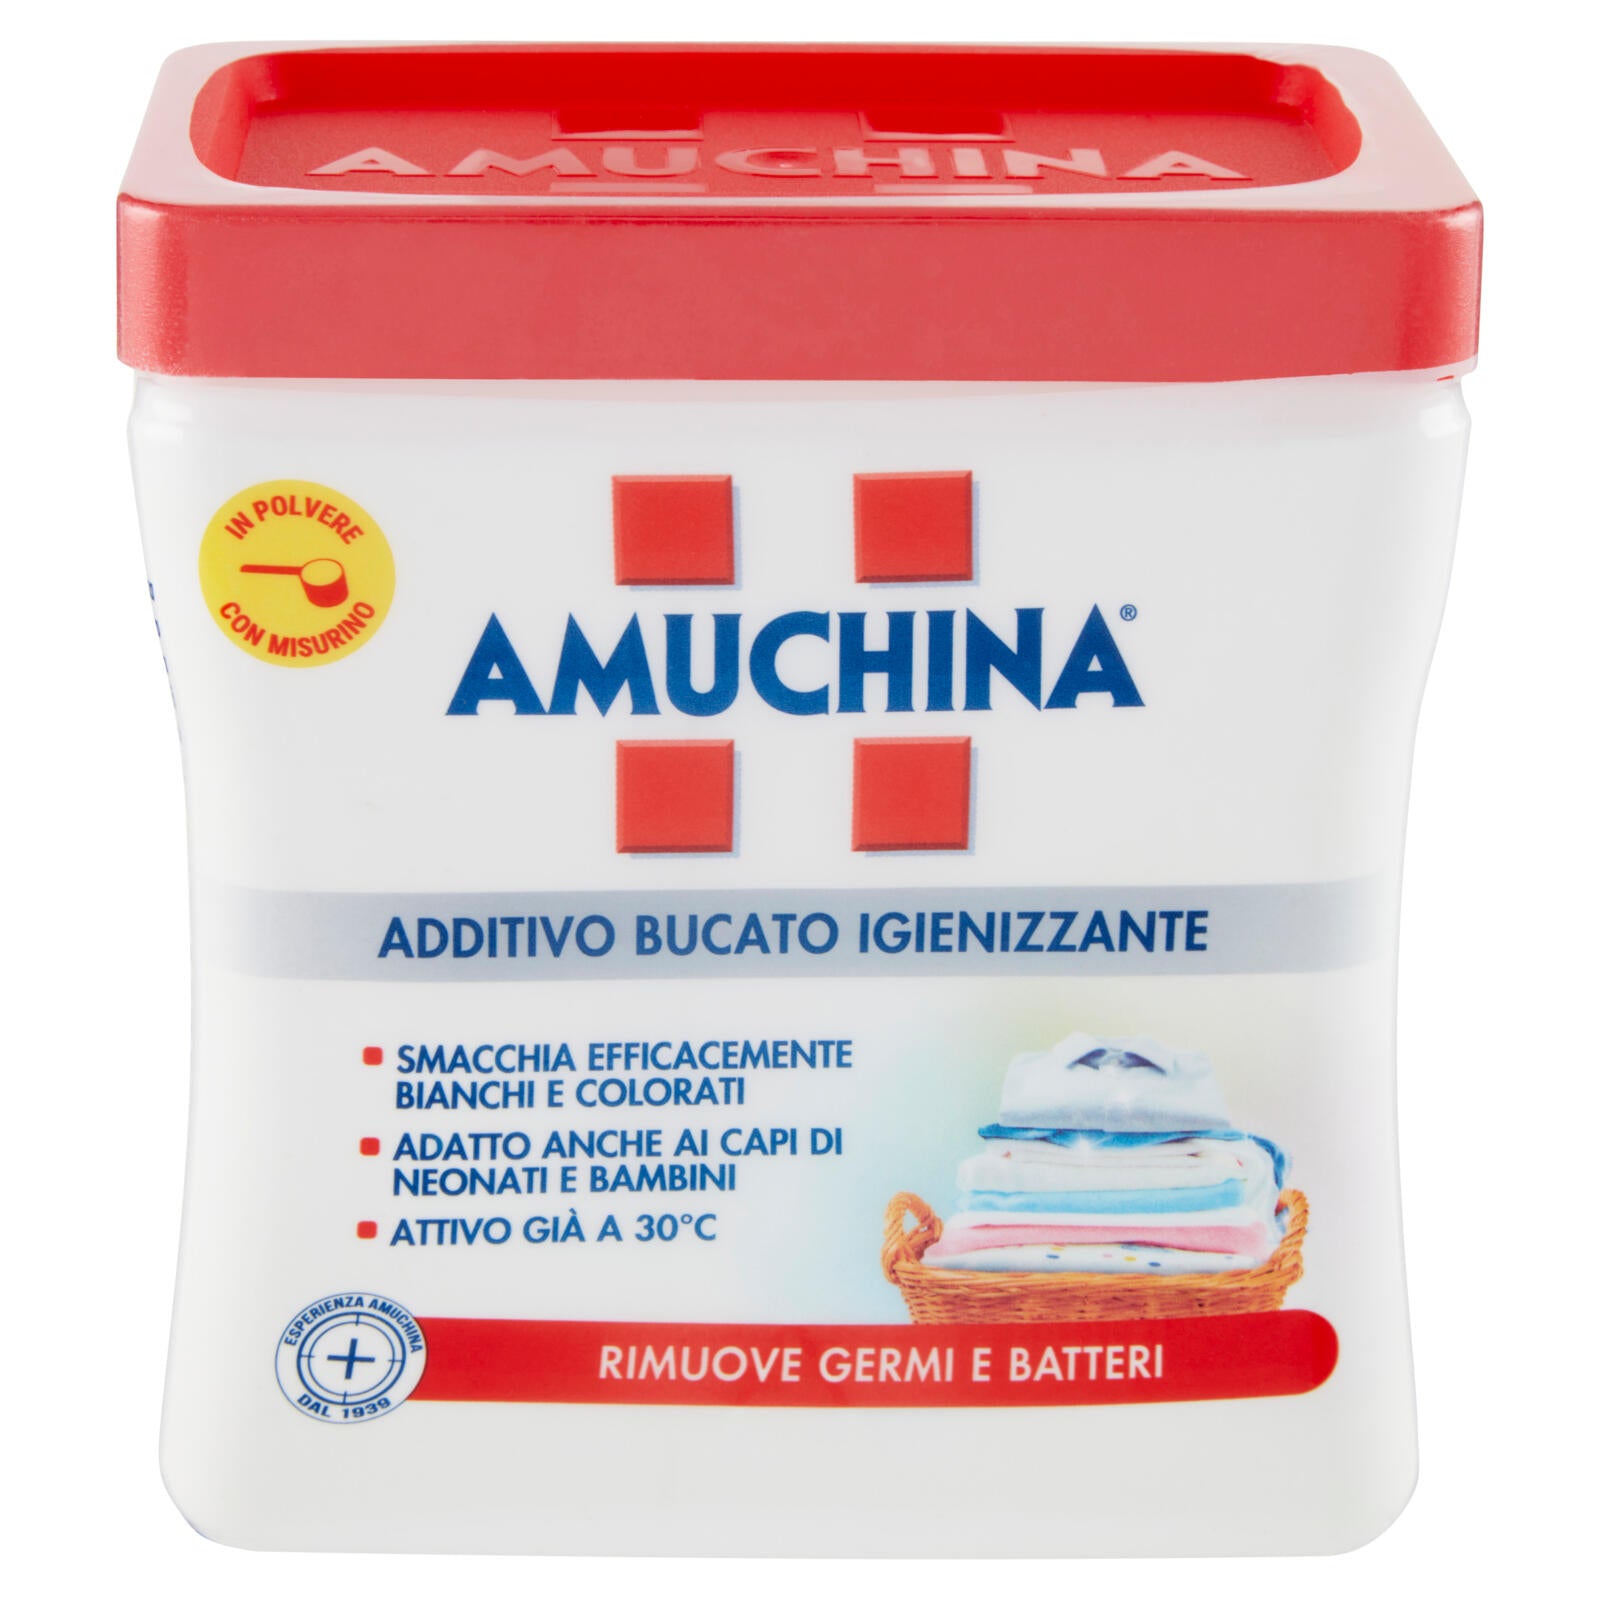 Amuchina Additivo Bucato Igienizzante in Polvere con Misurino 500 g